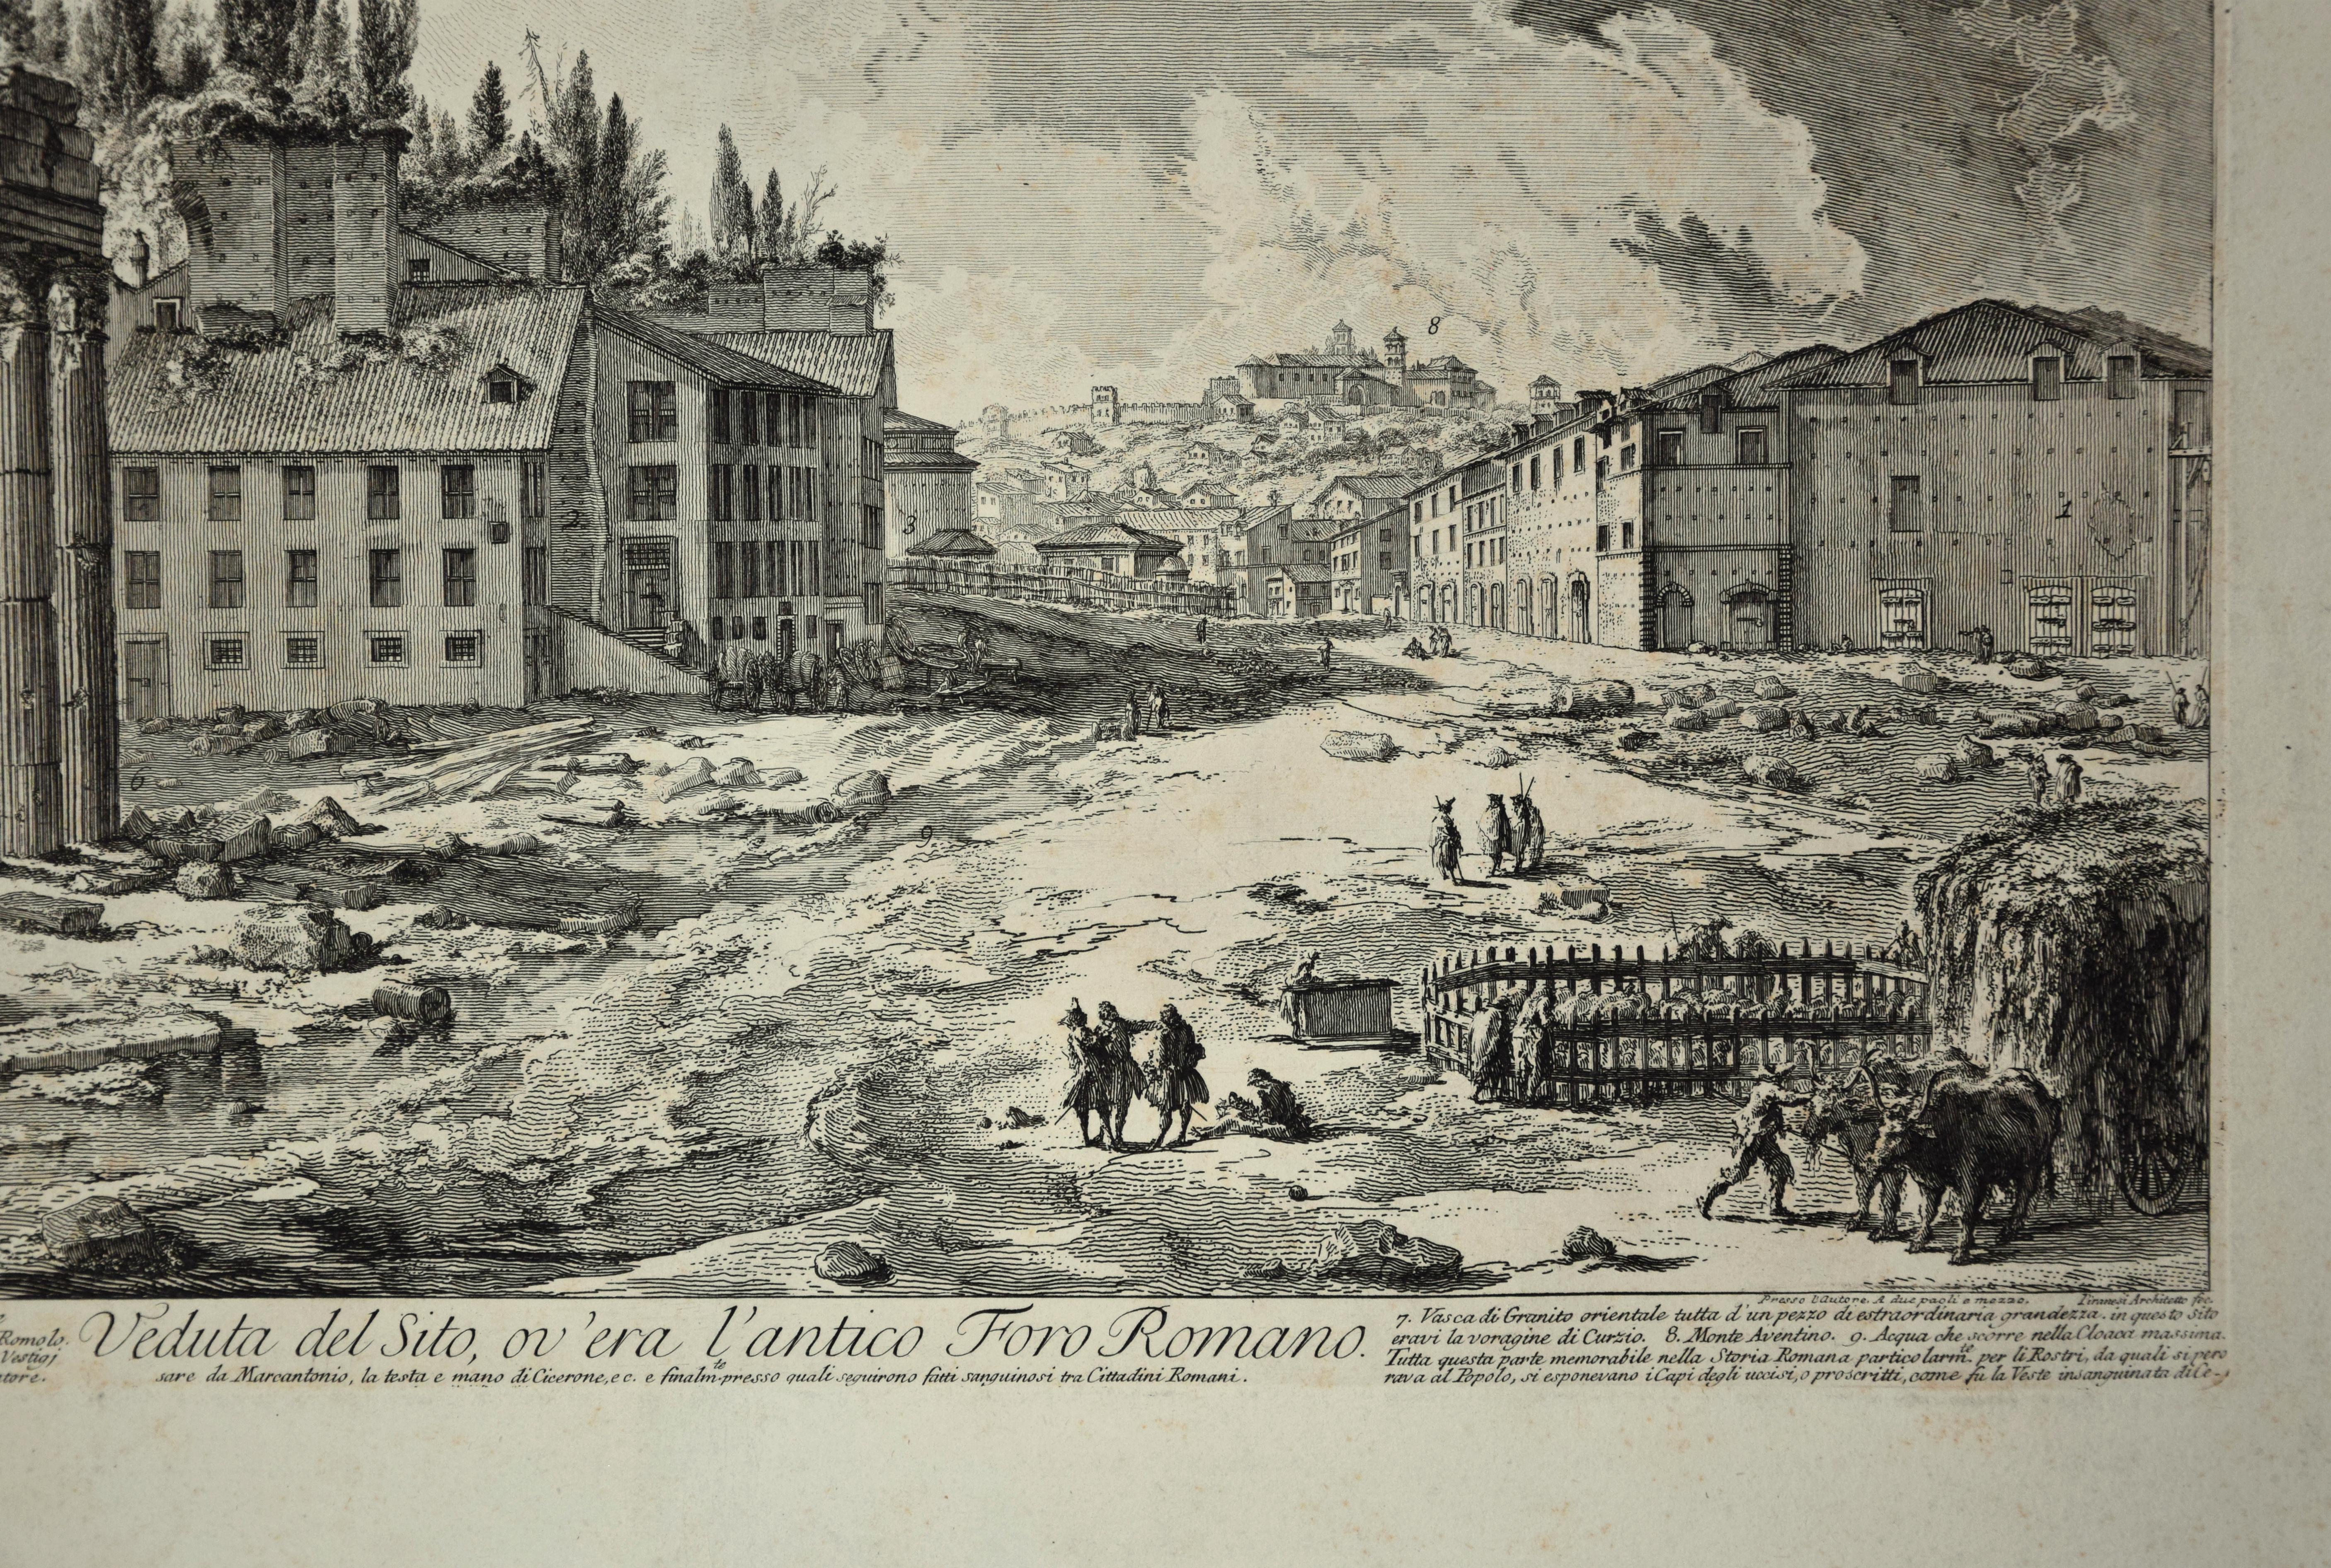 Veduta del Sito, ov'era l'antico Foro Romano   - Print by Giovanni Battista Piranesi